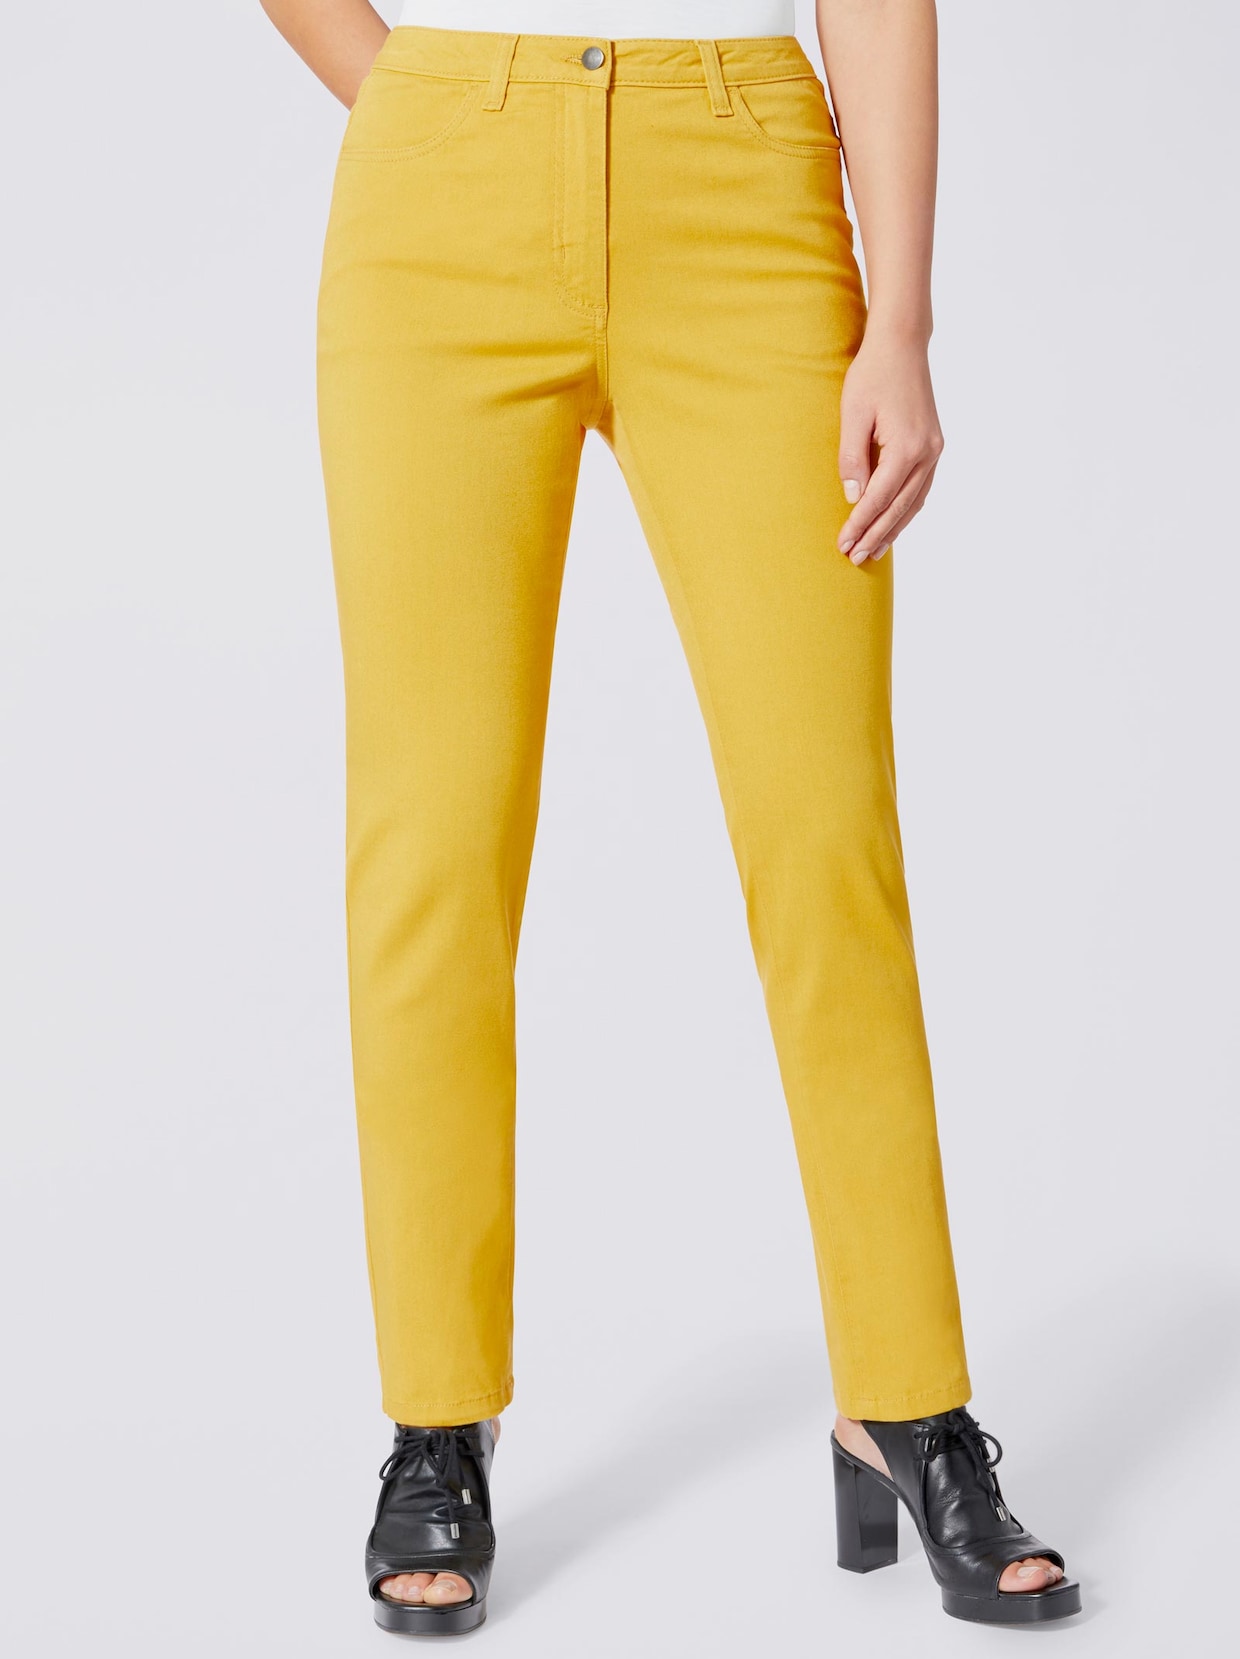 pantalon extensible - couleur laiton